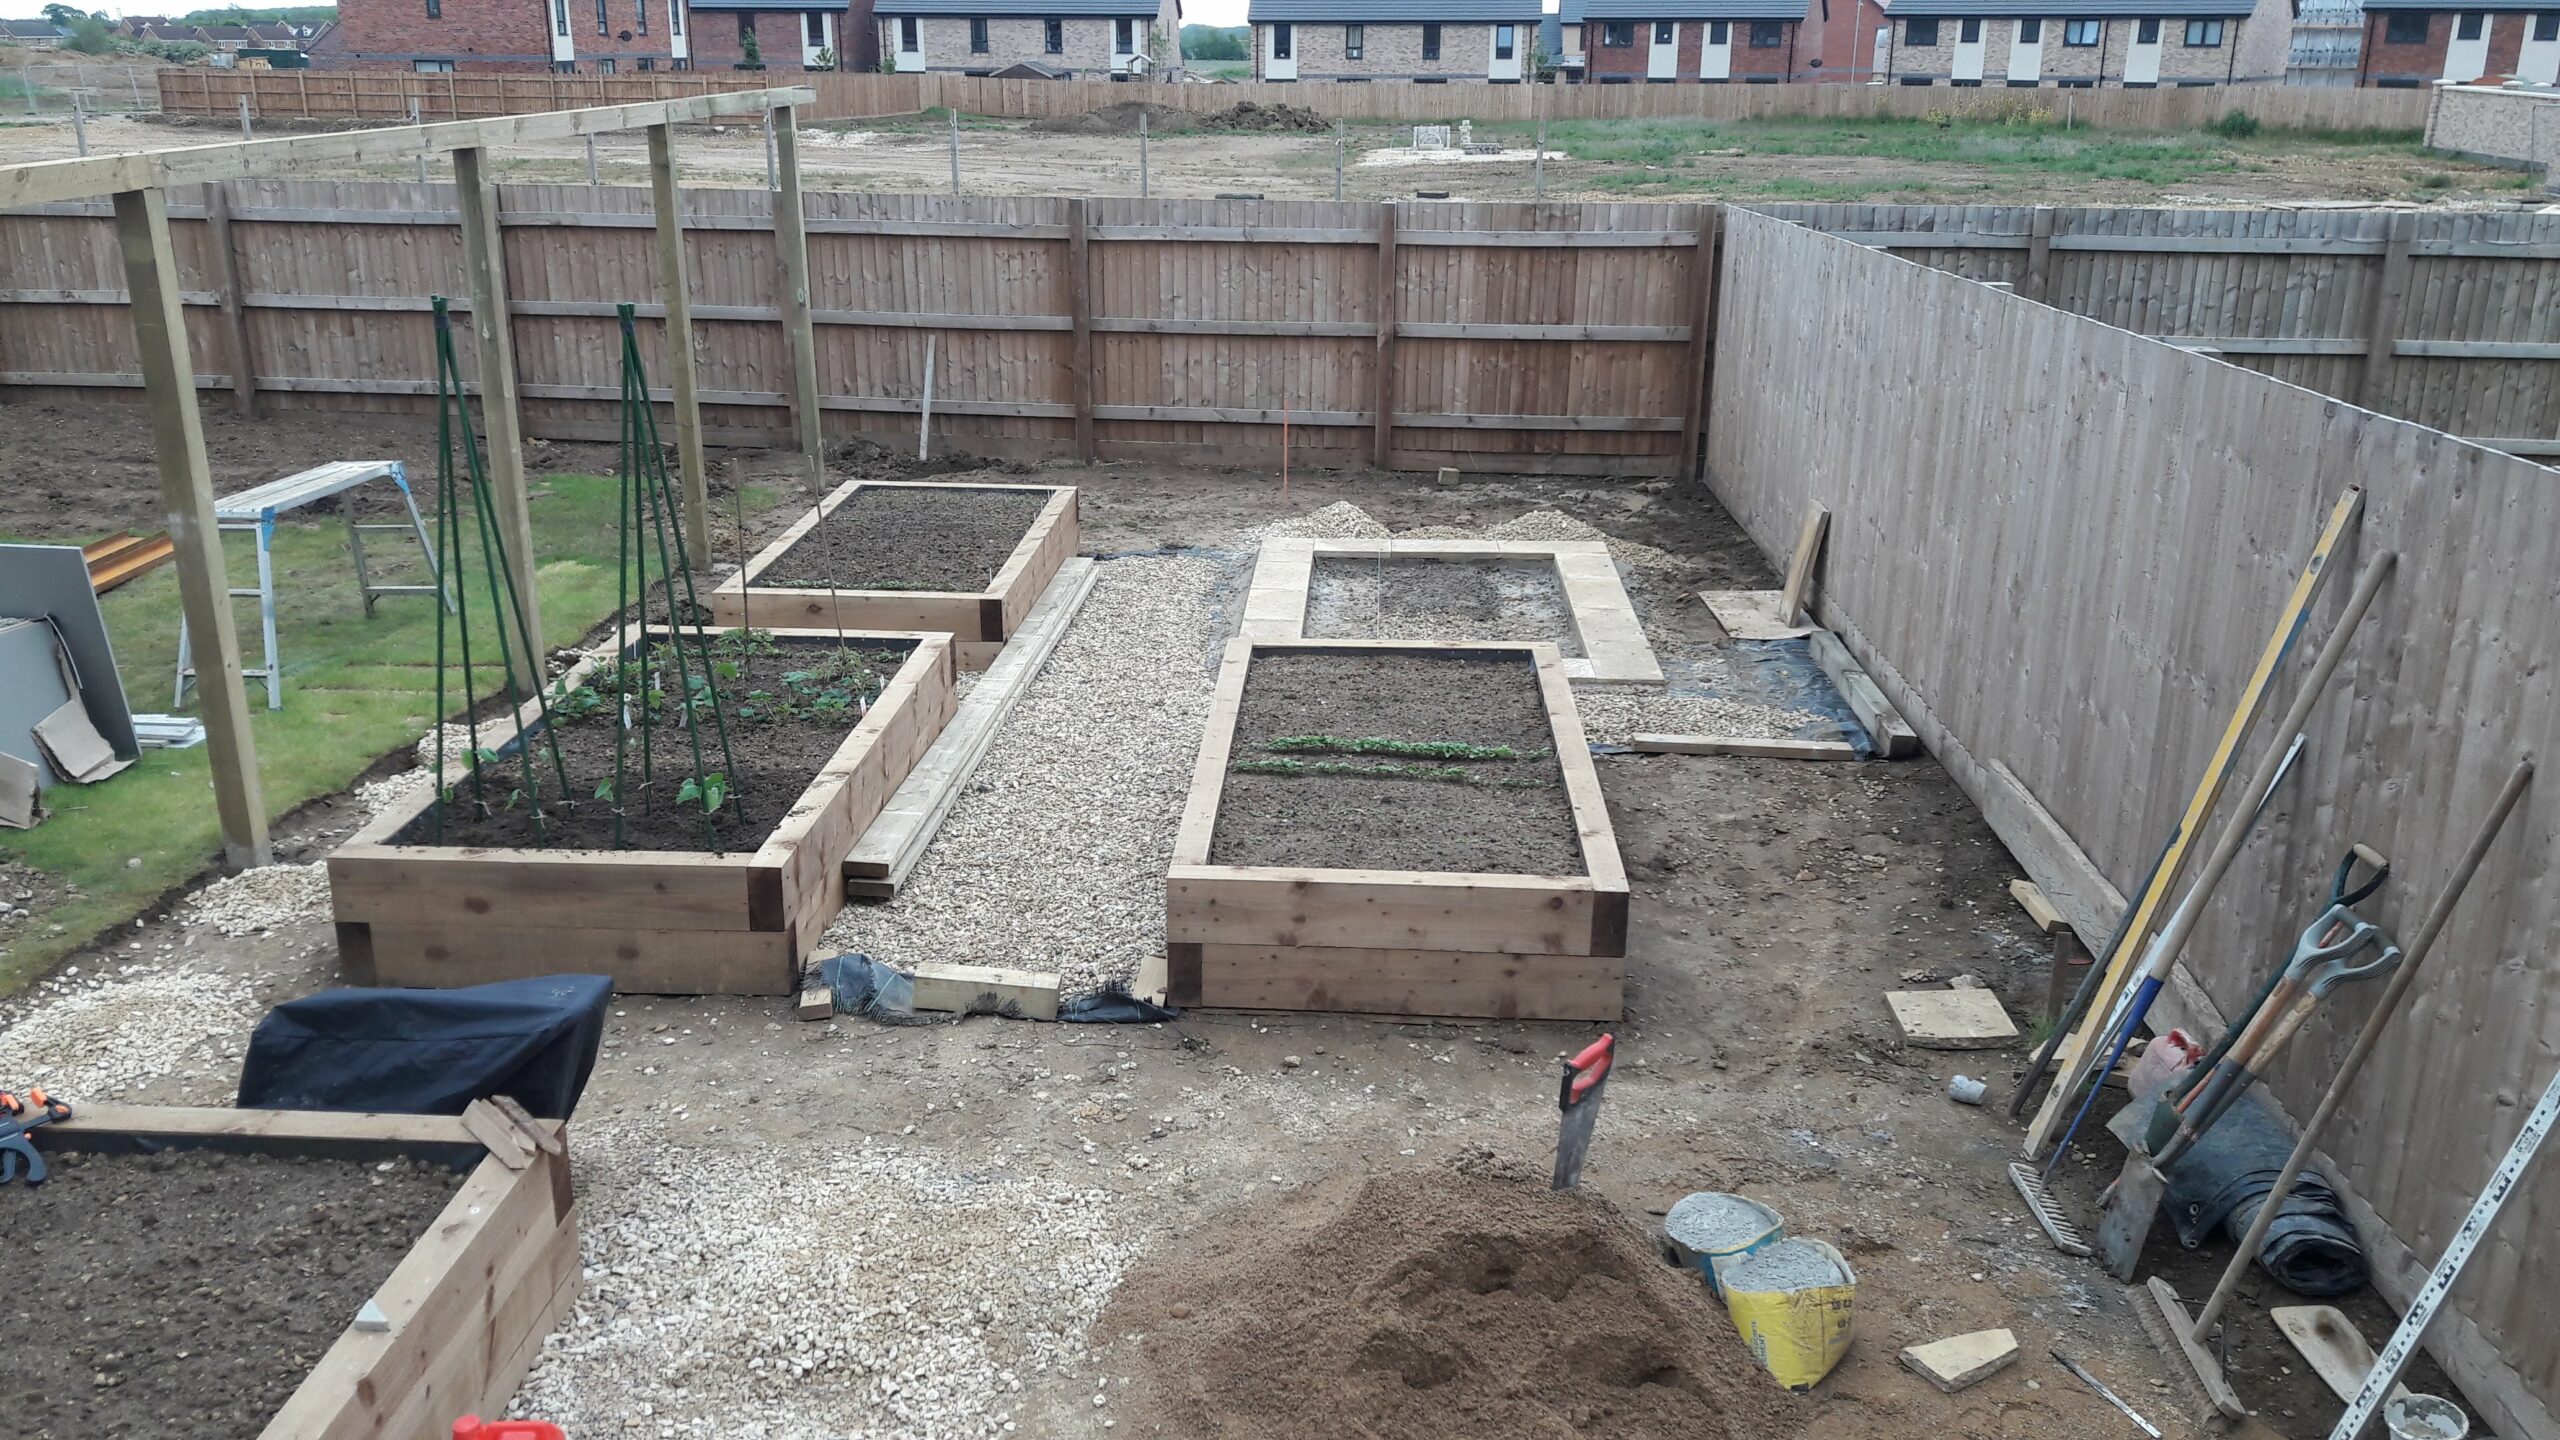 Work in progress in Sleaford new build garden